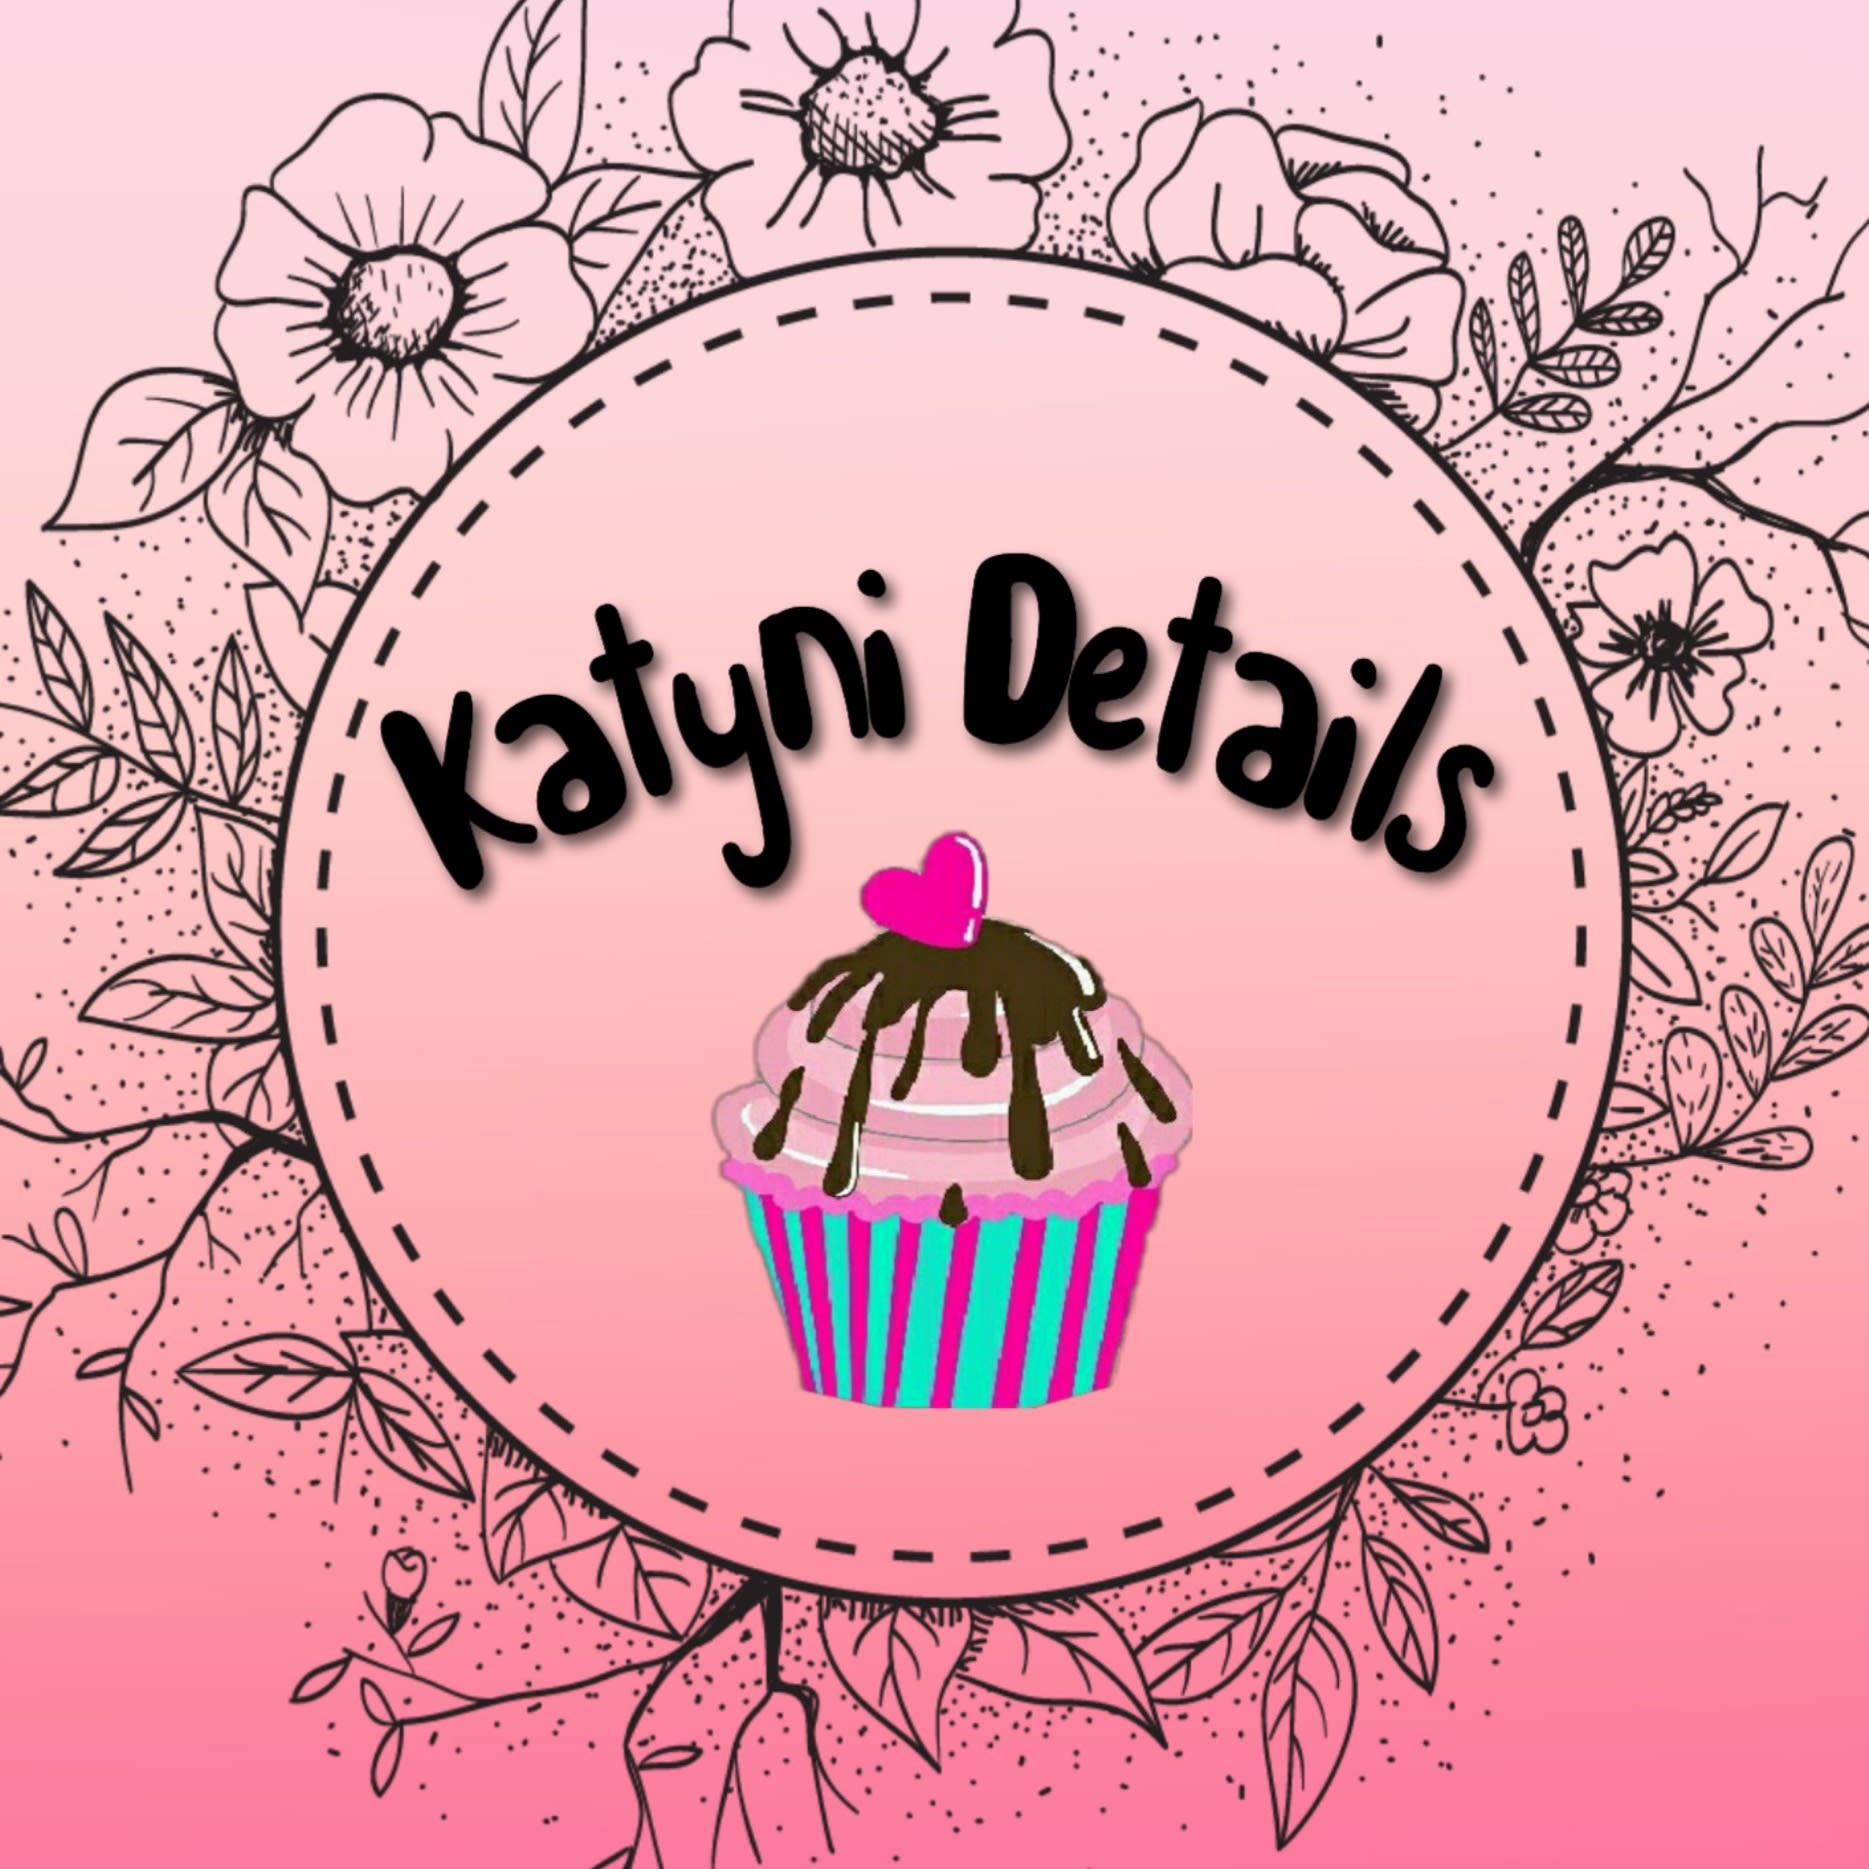 Katyni Details